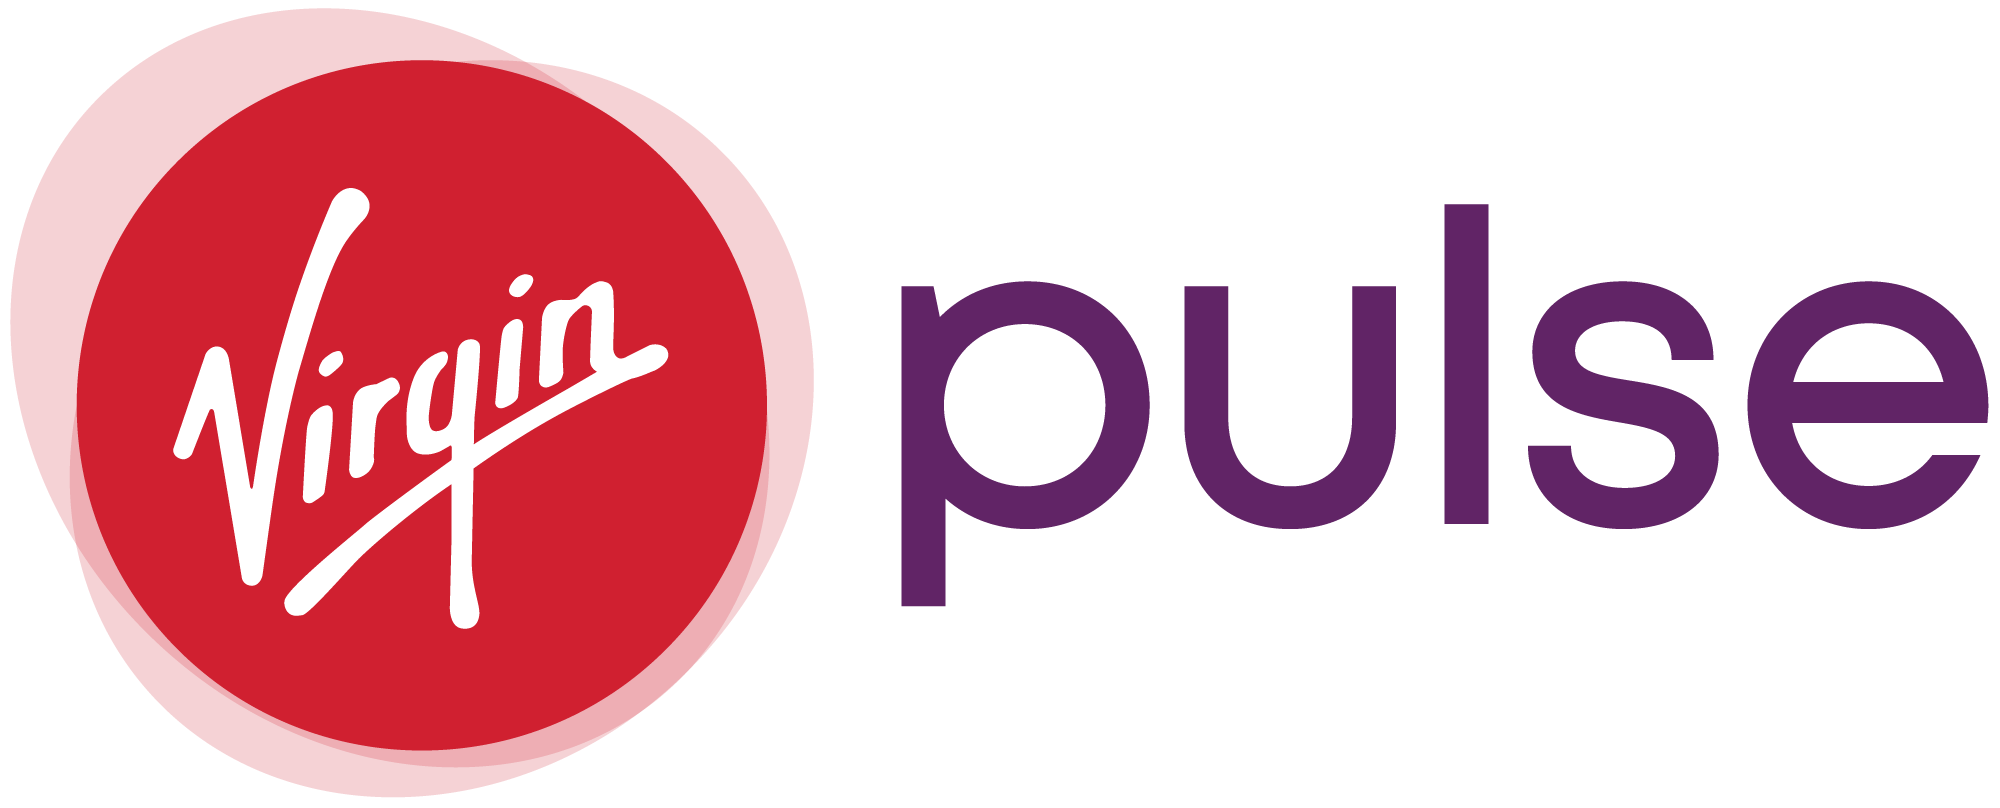 Virgin Pulse Logo